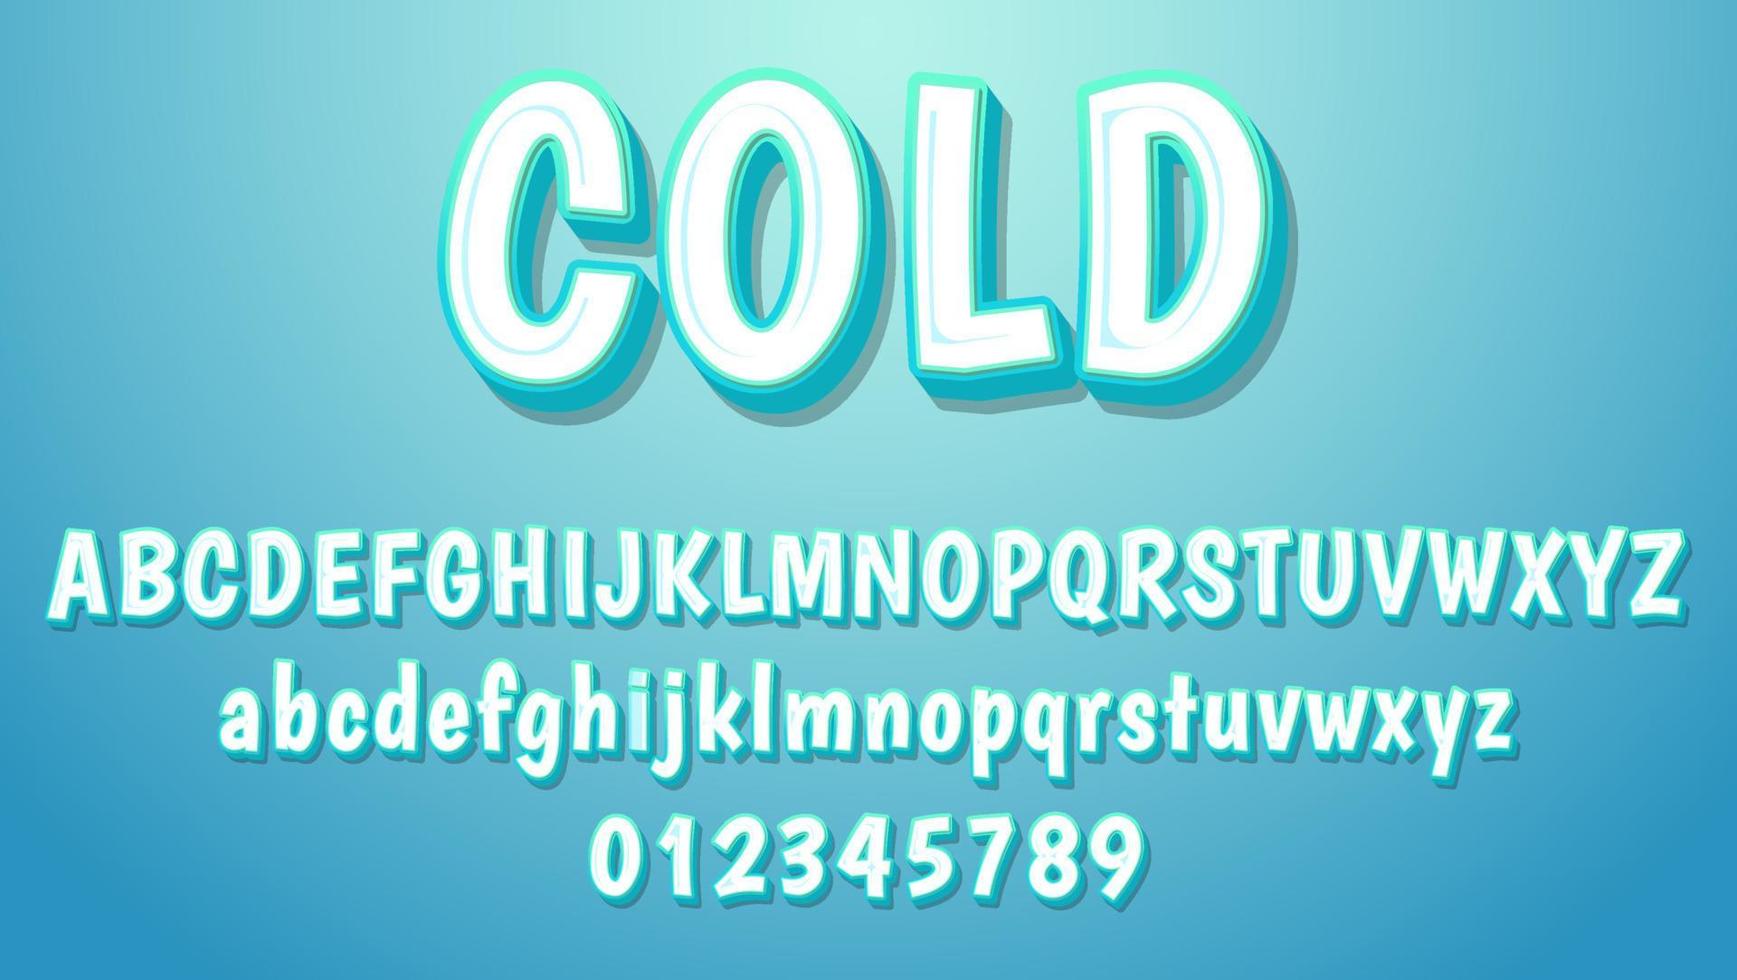 3d koude volledig bewerkbare teksteffect ontwerpsjabloon op blauwe achtergrond vector